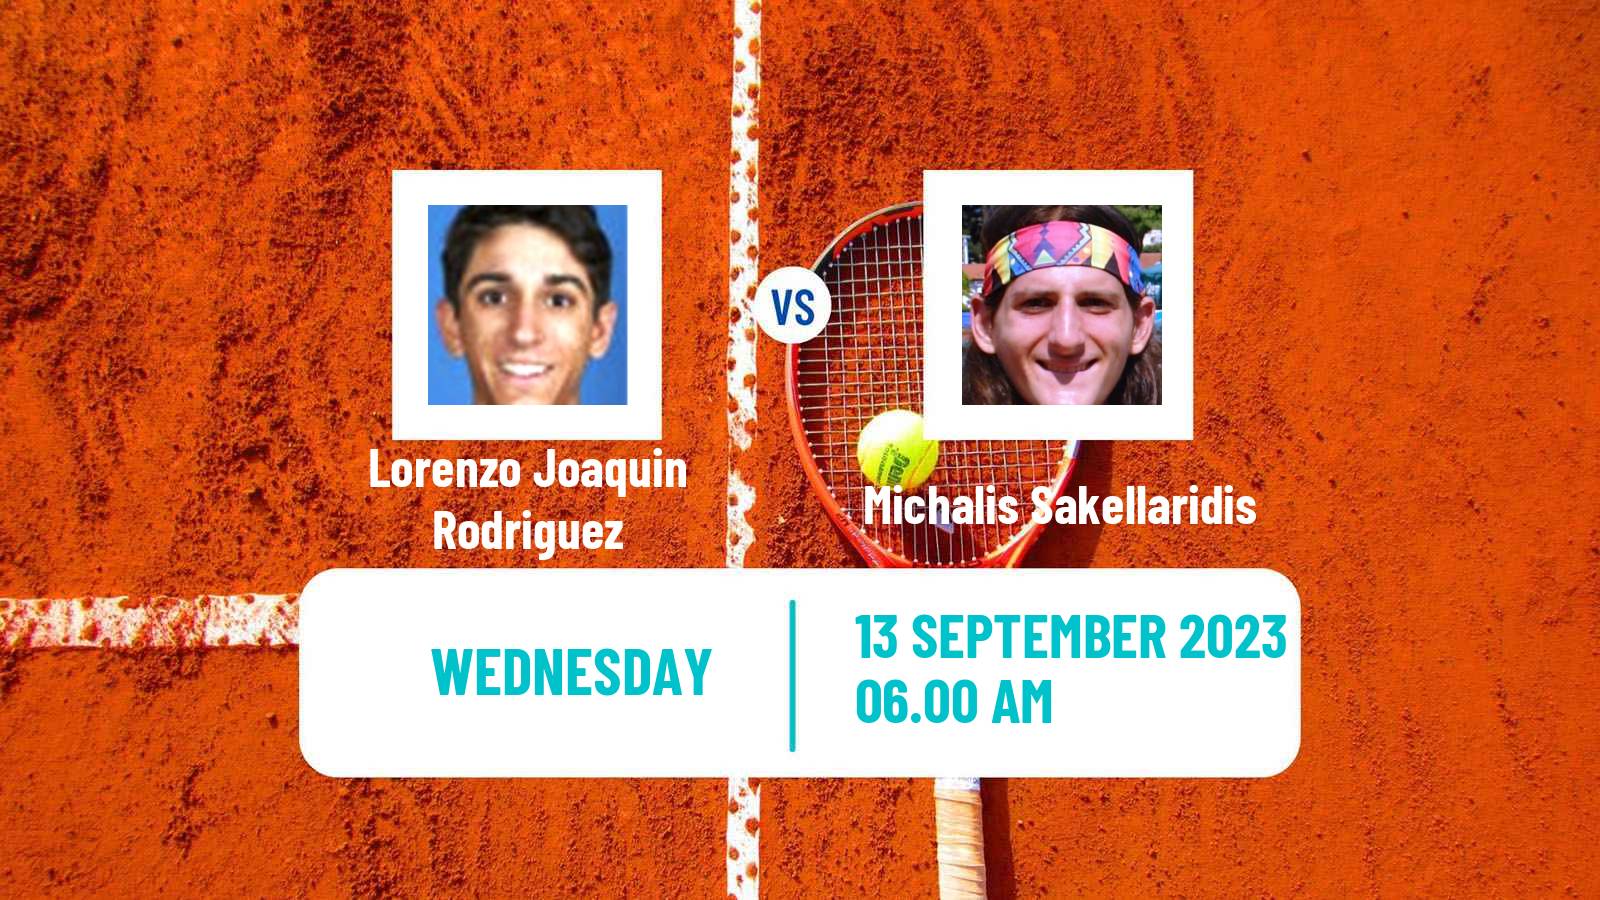 Tennis ITF M15 Satu Mare Men Lorenzo Joaquin Rodriguez - Michalis Sakellaridis